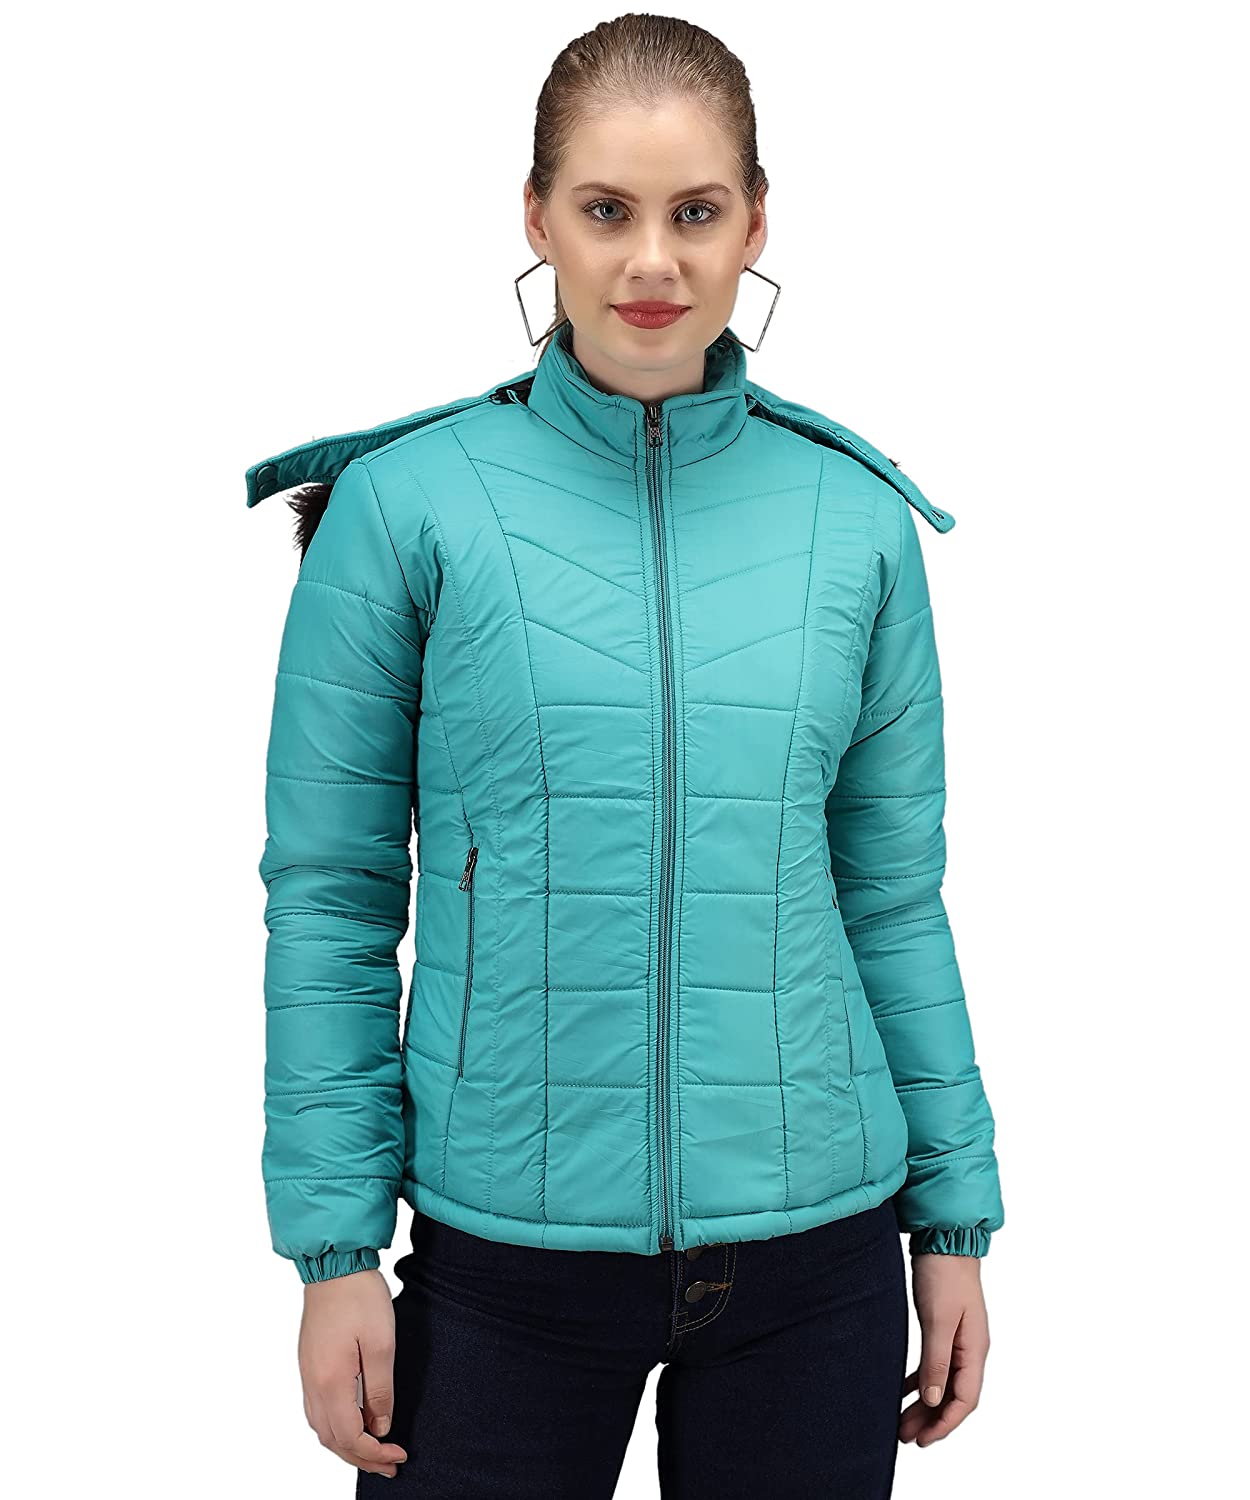 Amazon Deal: सर्दी के लिए चाहिए बढ़िया ब्रांडेड जैकेट? ये हैं हजार रुपये से कम में मिल रही Women Winter jacket की डील